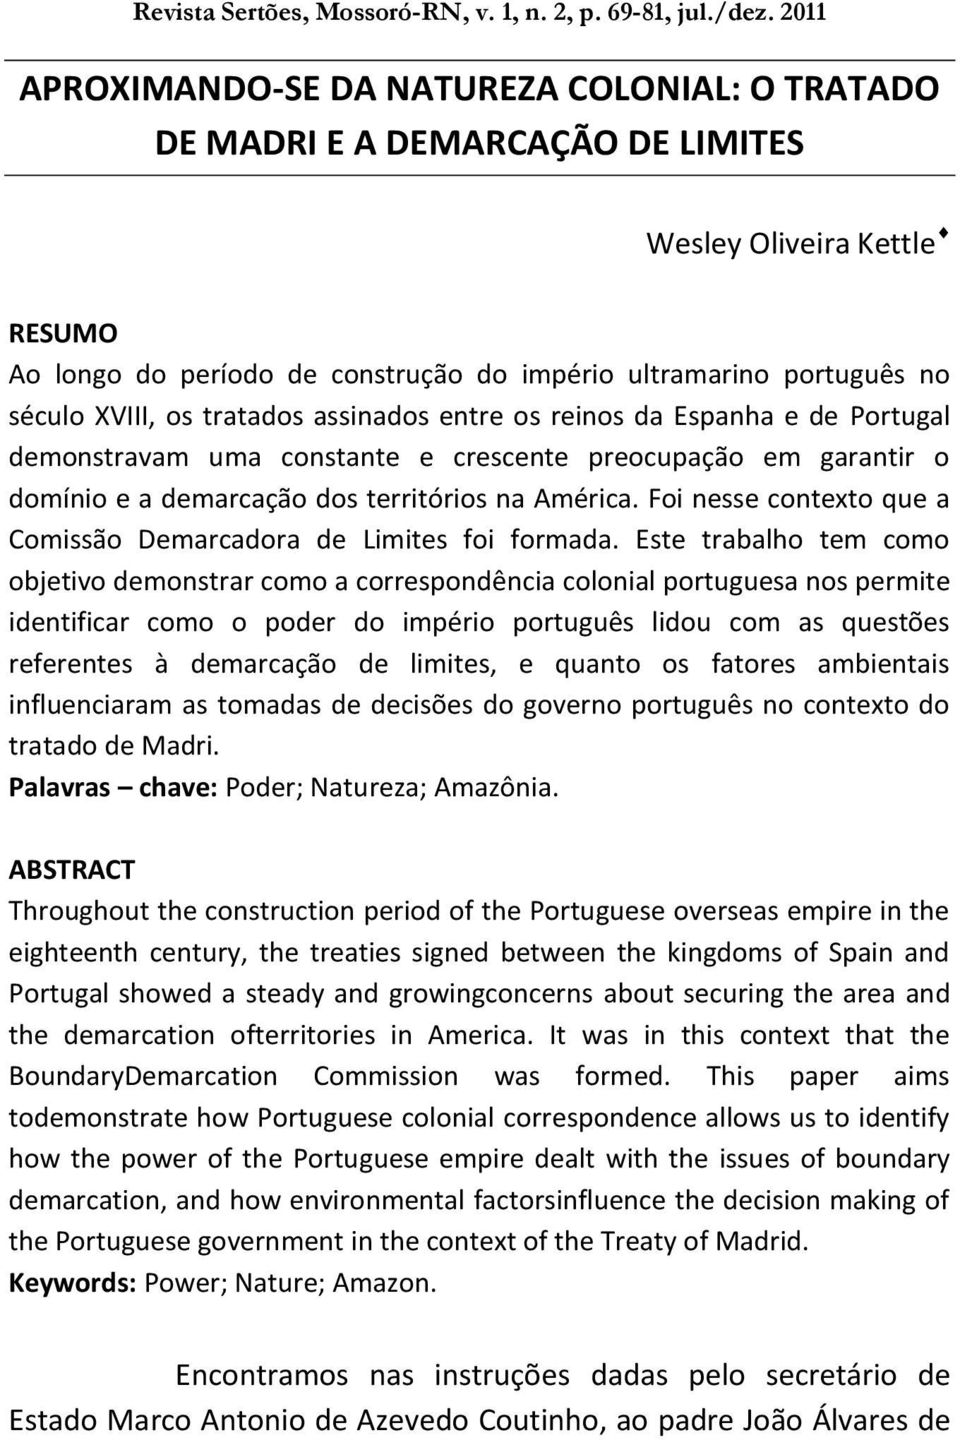 XVIII, os tratados assinados entre os reinos da Espanha e de Portugal demonstravam uma constante e crescente preocupação em garantir o domínio e a demarcação dos territórios na América.